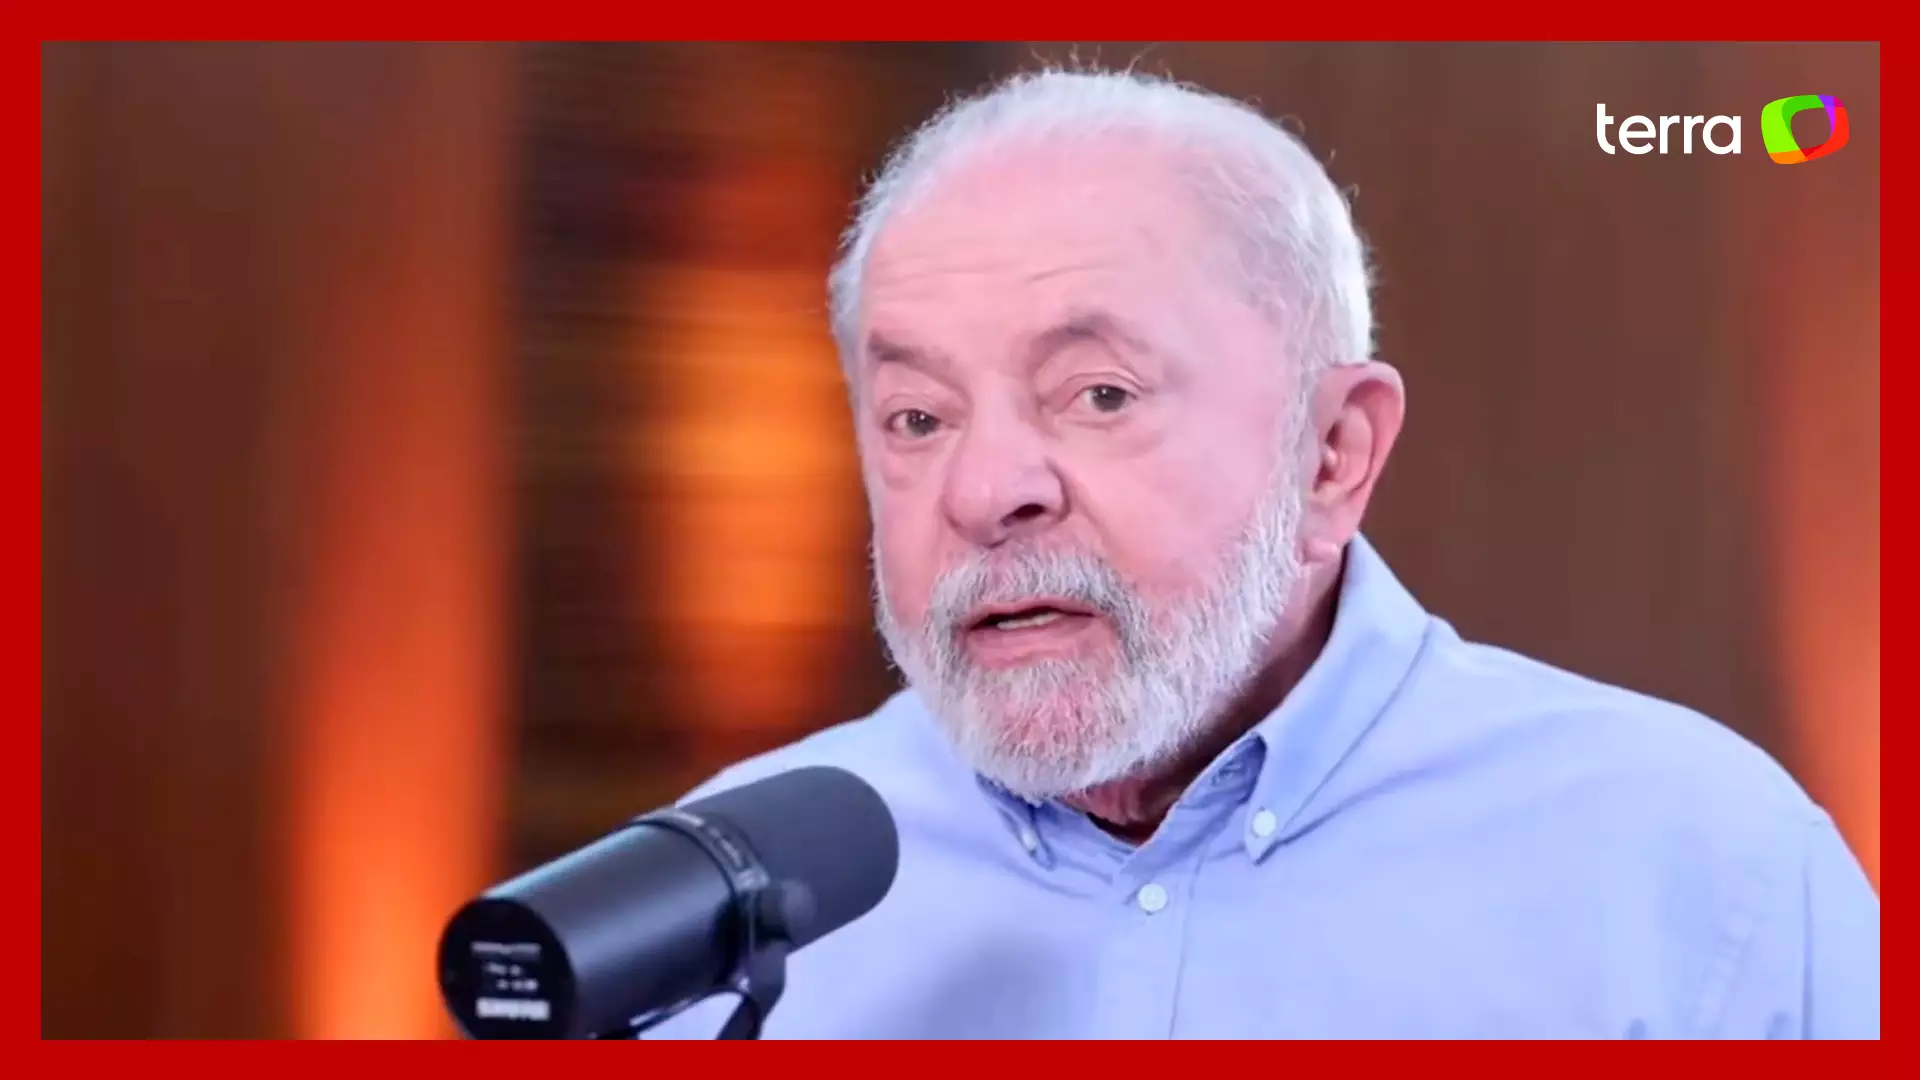 Presidente Lula passará por cirurgia no quadril para tratar artrose